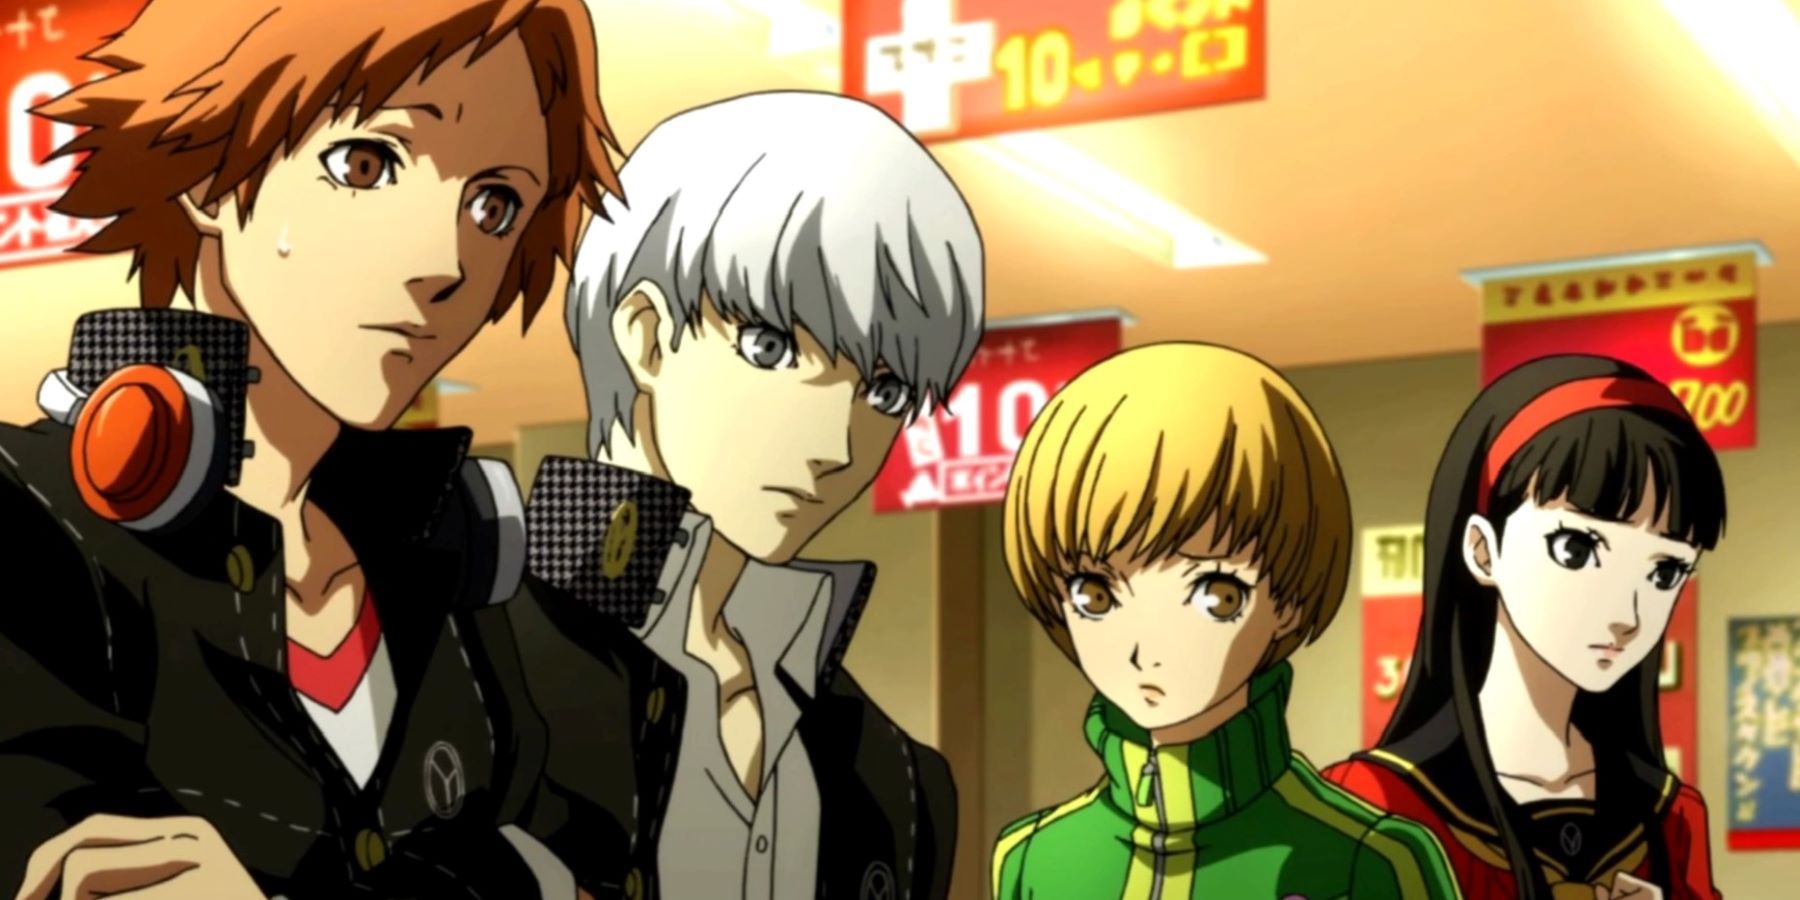 Persona 4's Yosuke Hanamura, Yu Narukami, Chie Satonaka, and Yukiko Amagi looking concerned